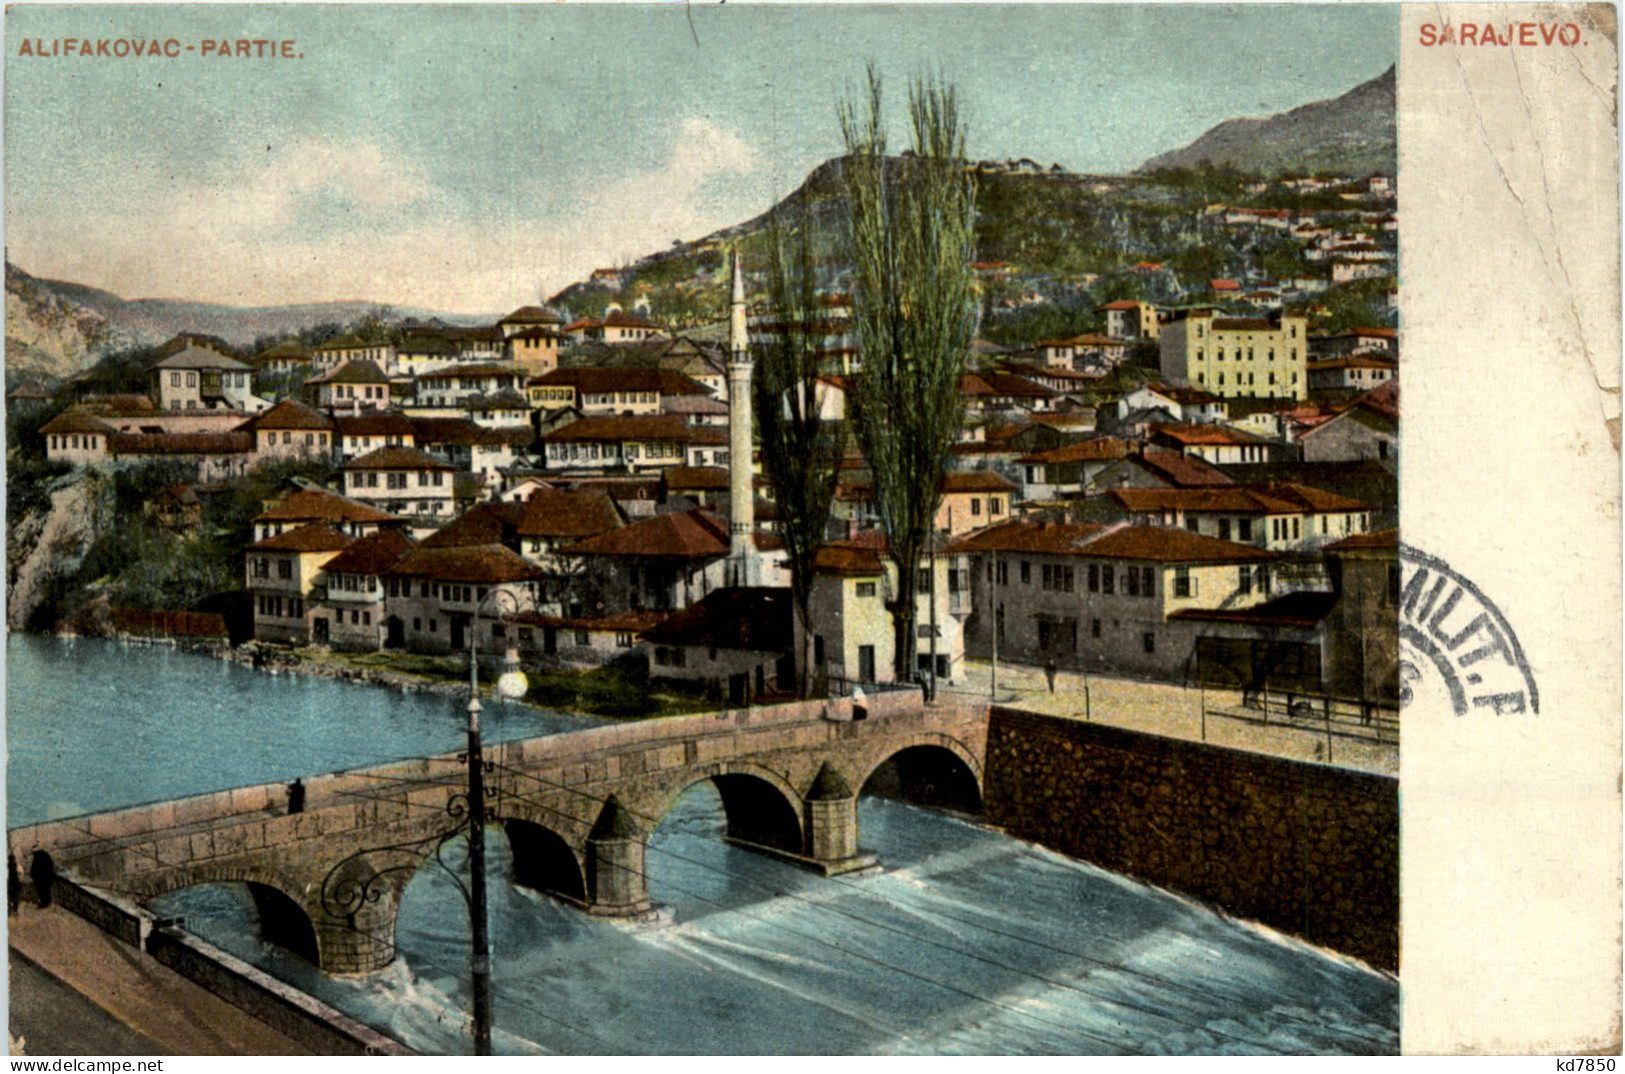 Sarajevo - Bosnia And Herzegovina